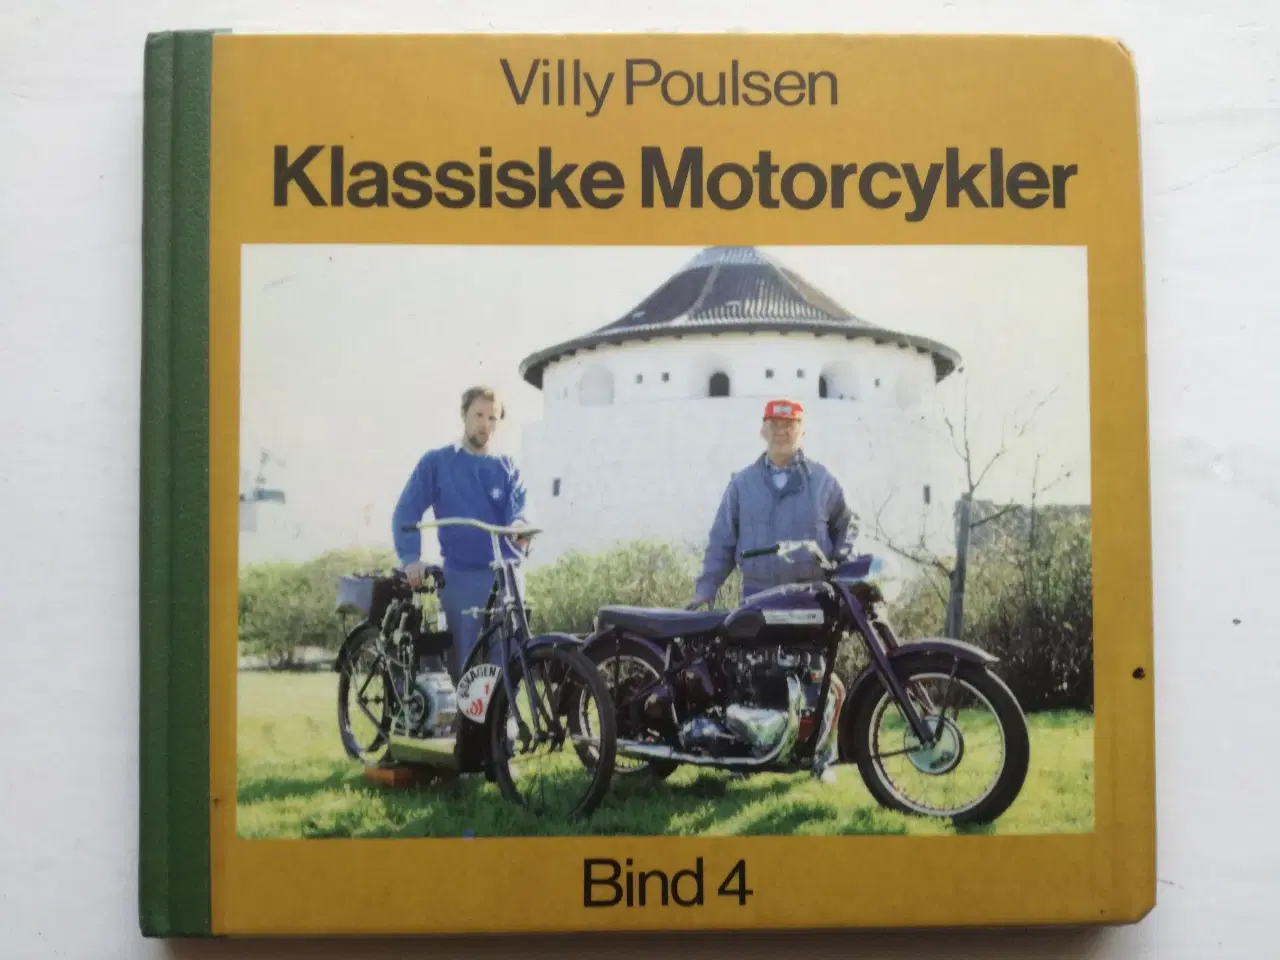 Billede 3 - Motorcykelbøger.